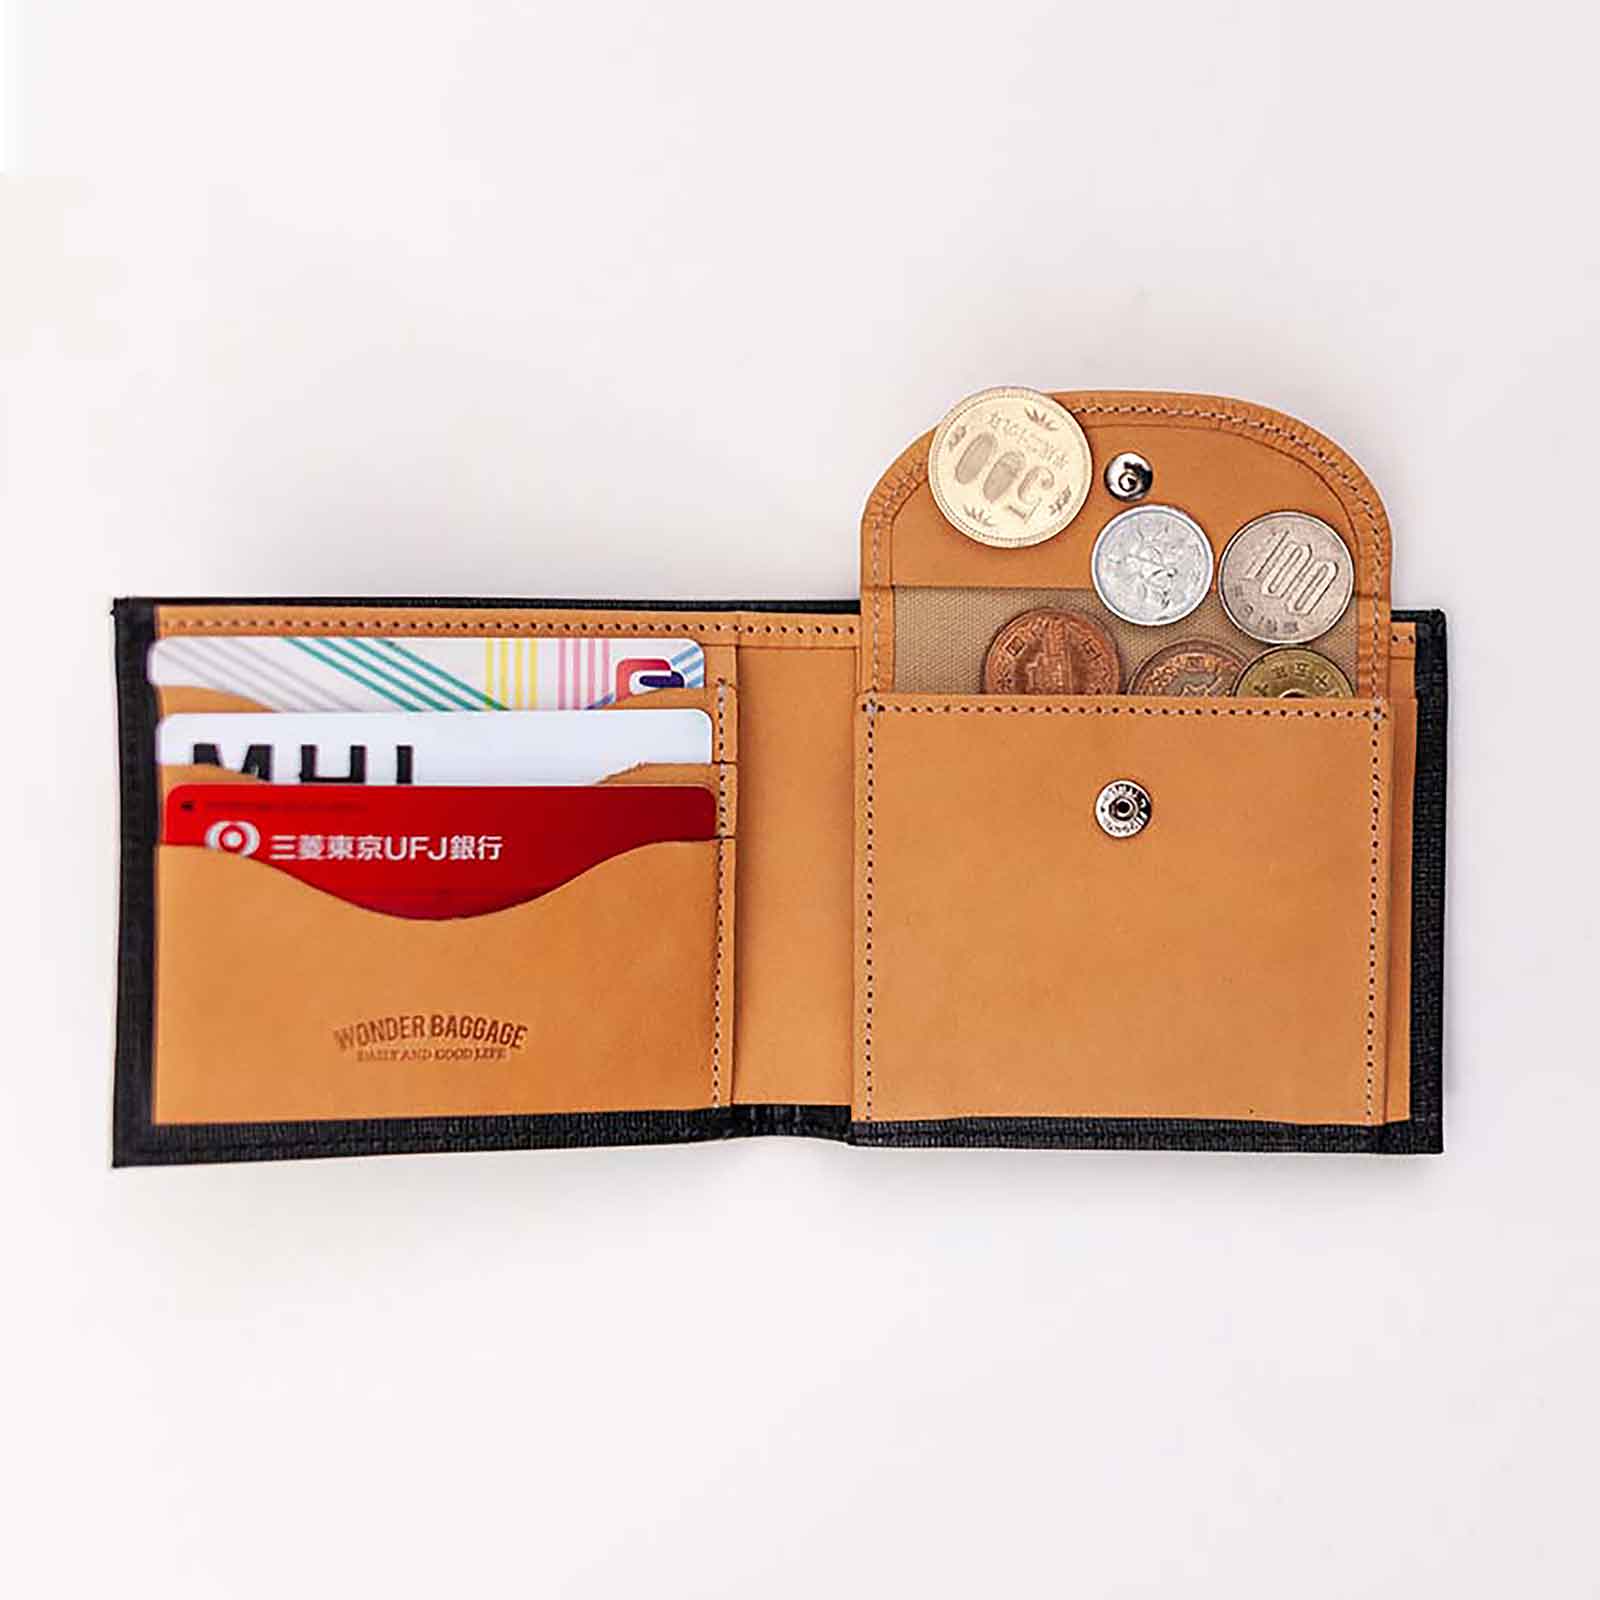 Bi-fold wallet